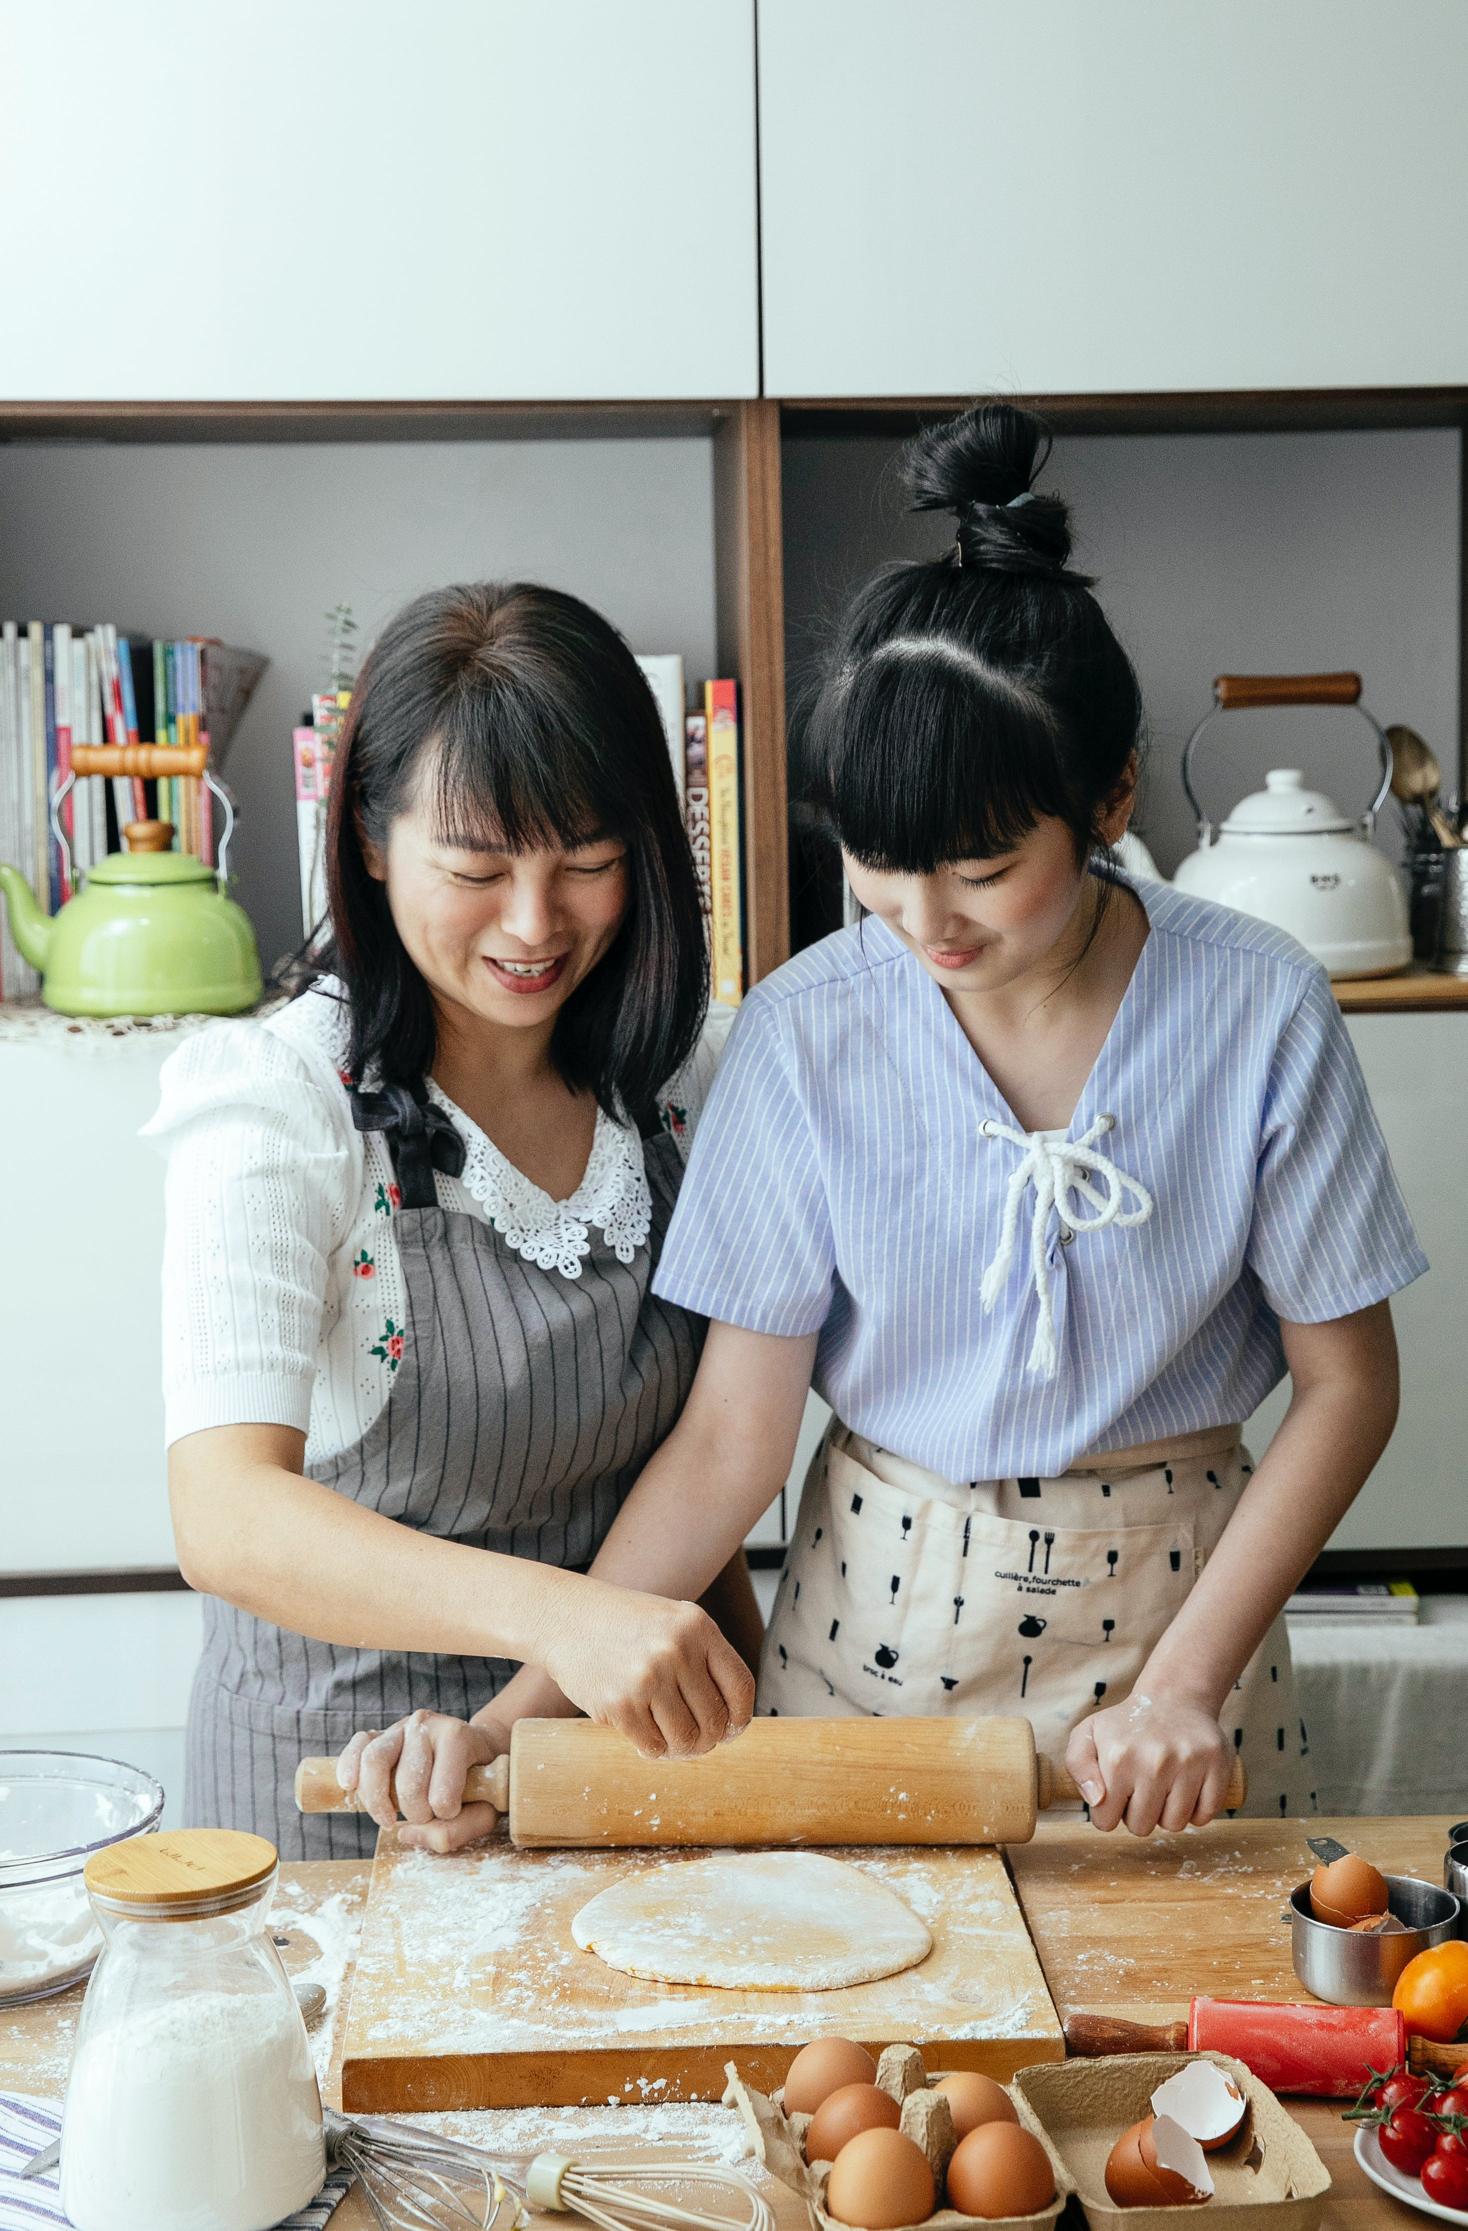 Roboty kuchenne – niezastąpiony pomocnik w przygotowywaniu posiłków